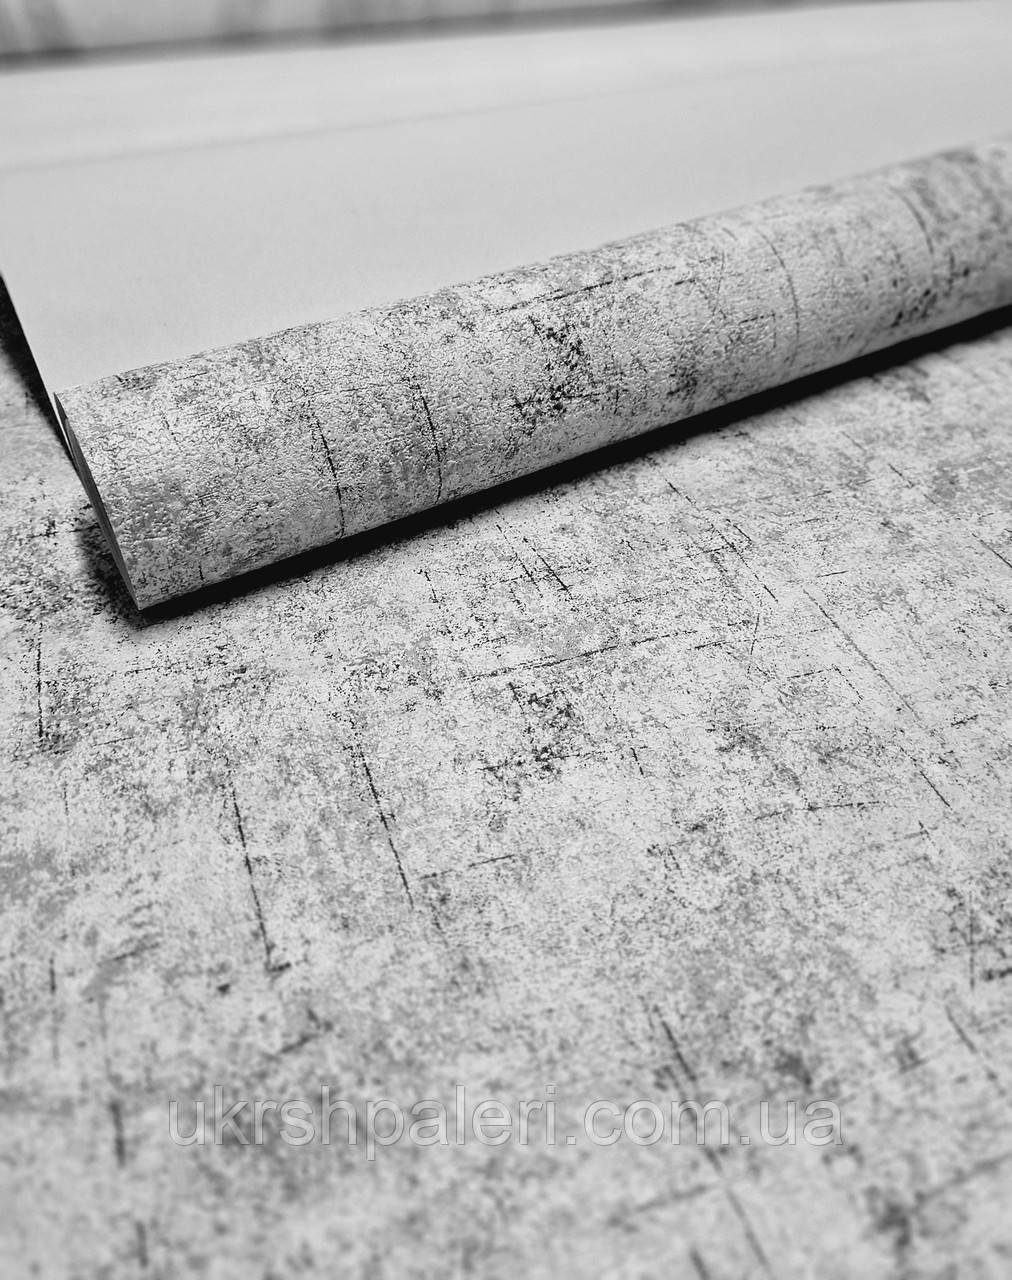 Шпалери Газета 2 5802-10 вінілові, супермийка, у рулоні 5 смуг по 3 метри, ширина 0.53 м